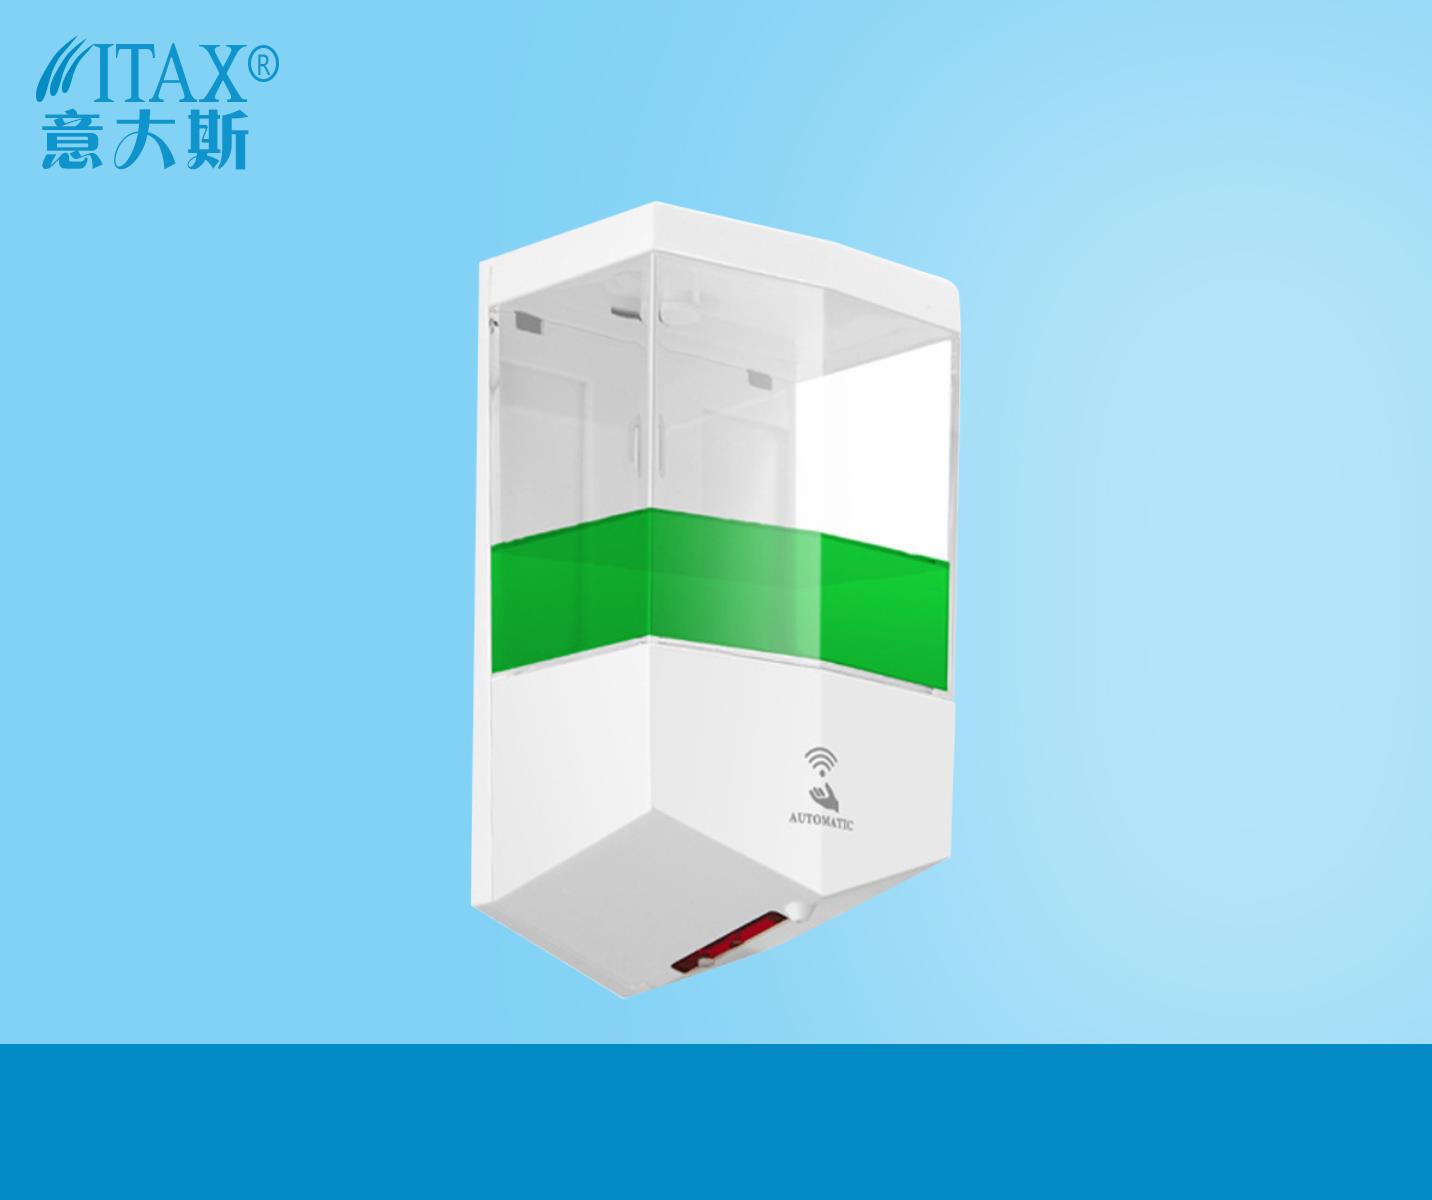 自动洗手液盒 壁挂式塑料皂液器 自动感应皂液器 X-5513